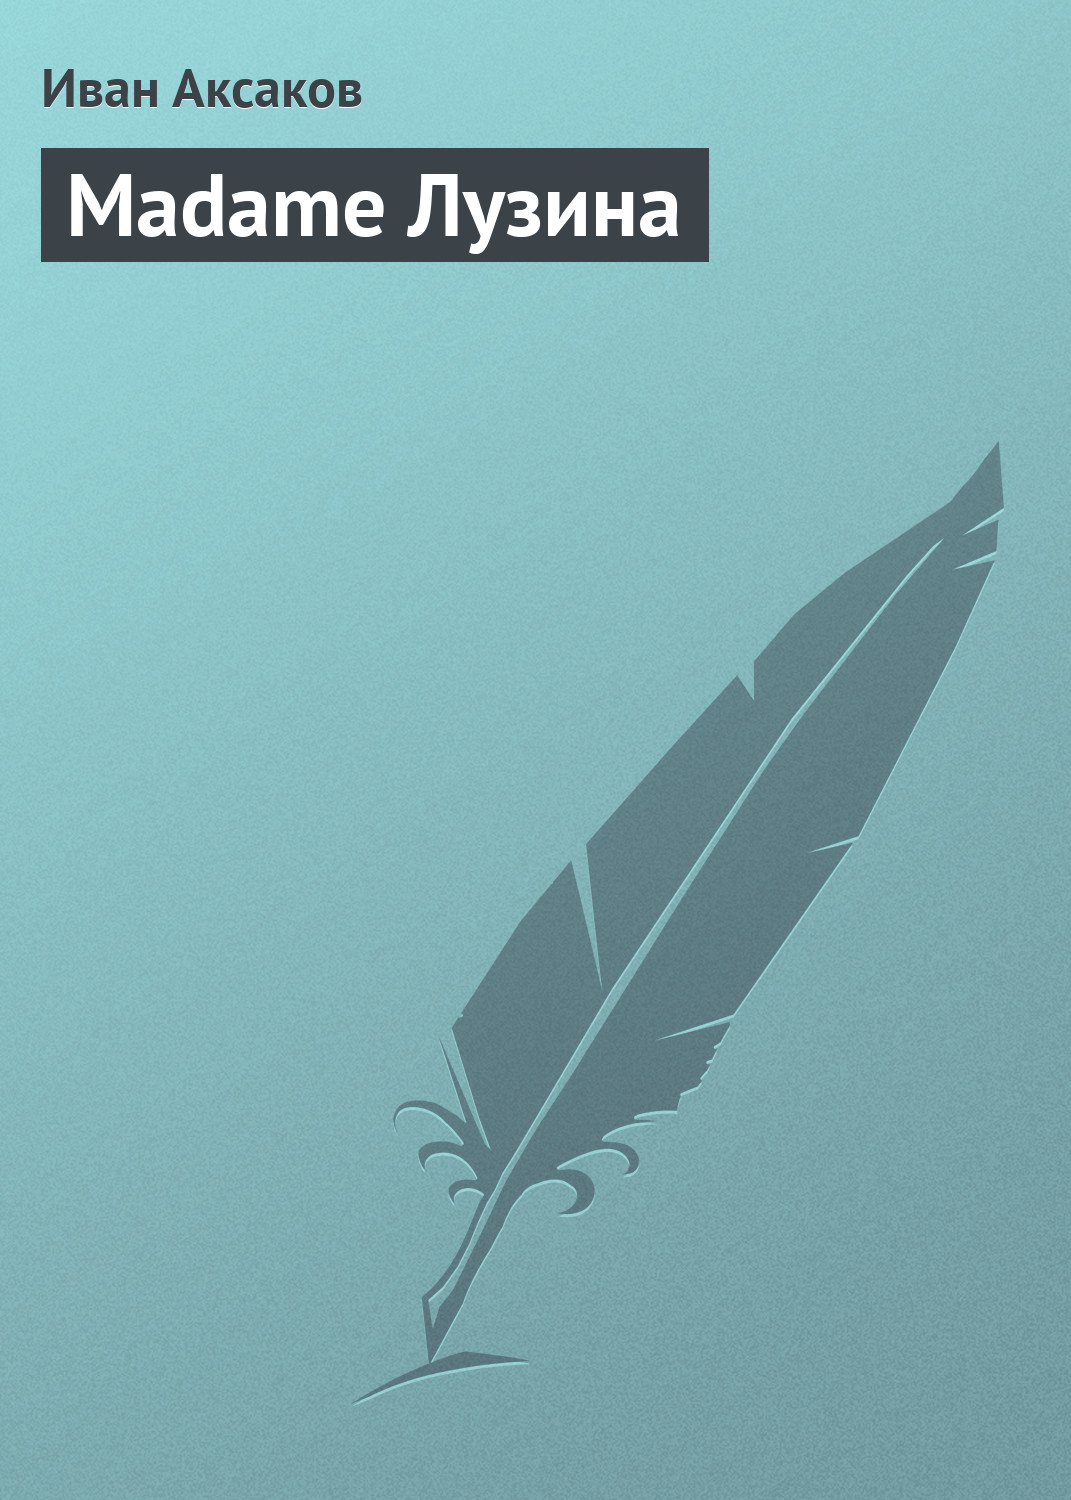 Книга Madame Лузина из серии , созданная Иван Аксаков, может относится к жанру Литература 19 века, Критика. Стоимость электронной книги Madame Лузина с идентификатором 2667245 составляет 9.99 руб.